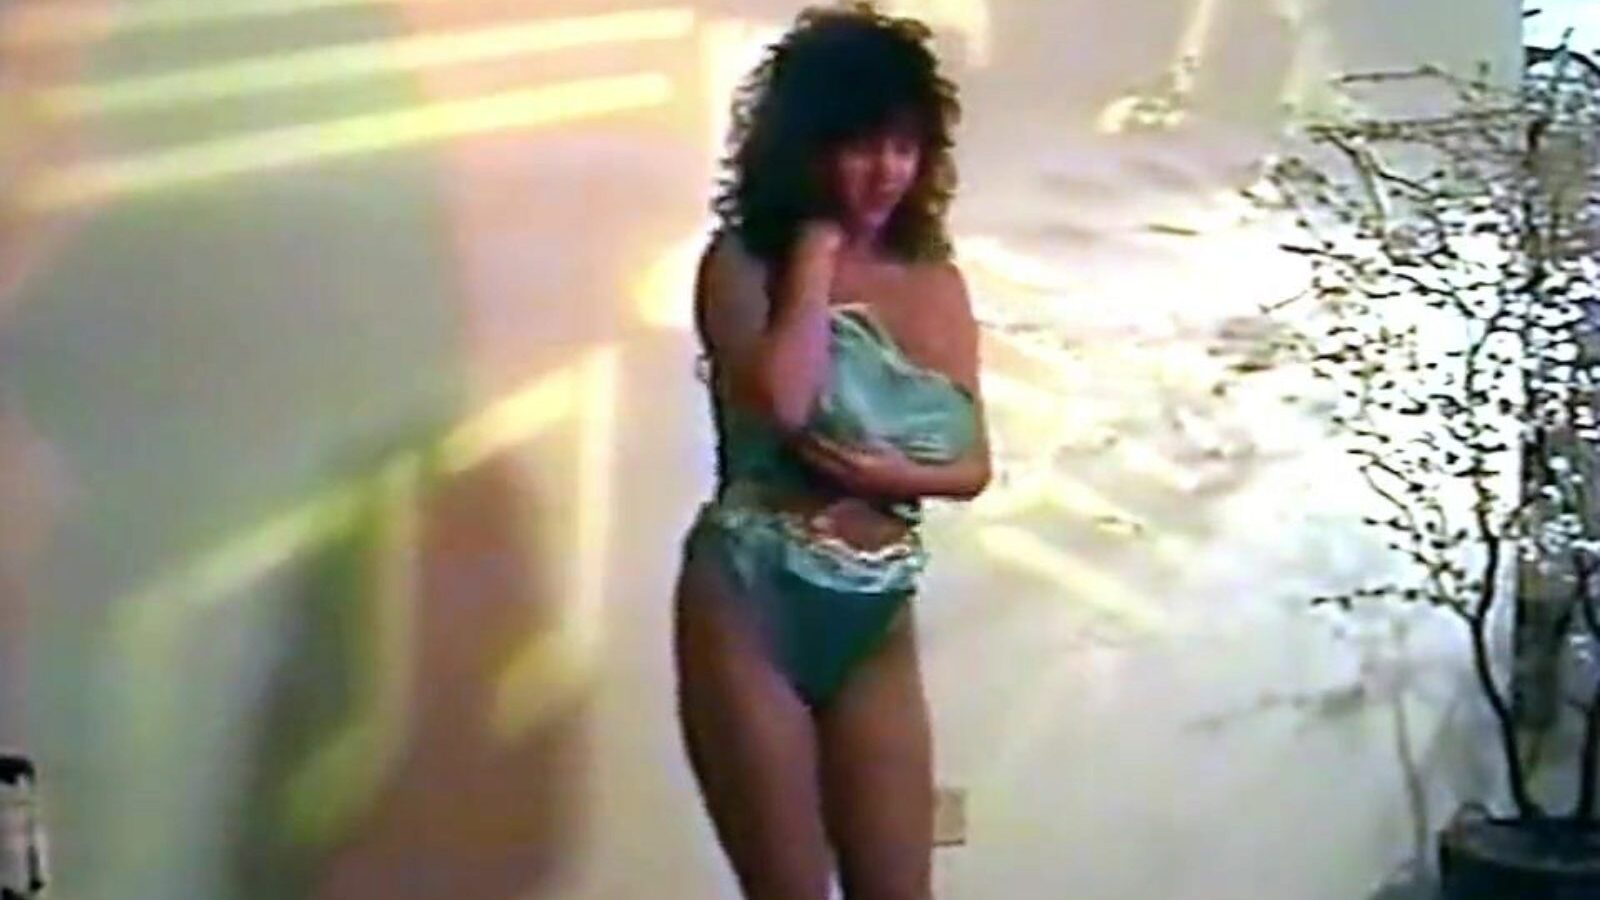 obsession - Danse de strip-tease de lingerie vintage des années 80 avec obsession de grosse montre - Danse de strip-tease de lingerie vintage des années 80 avec gros seins movie on xhamster - la base de données ultime de gros seins britanniques gratuits gros clips de tube pornographique HD